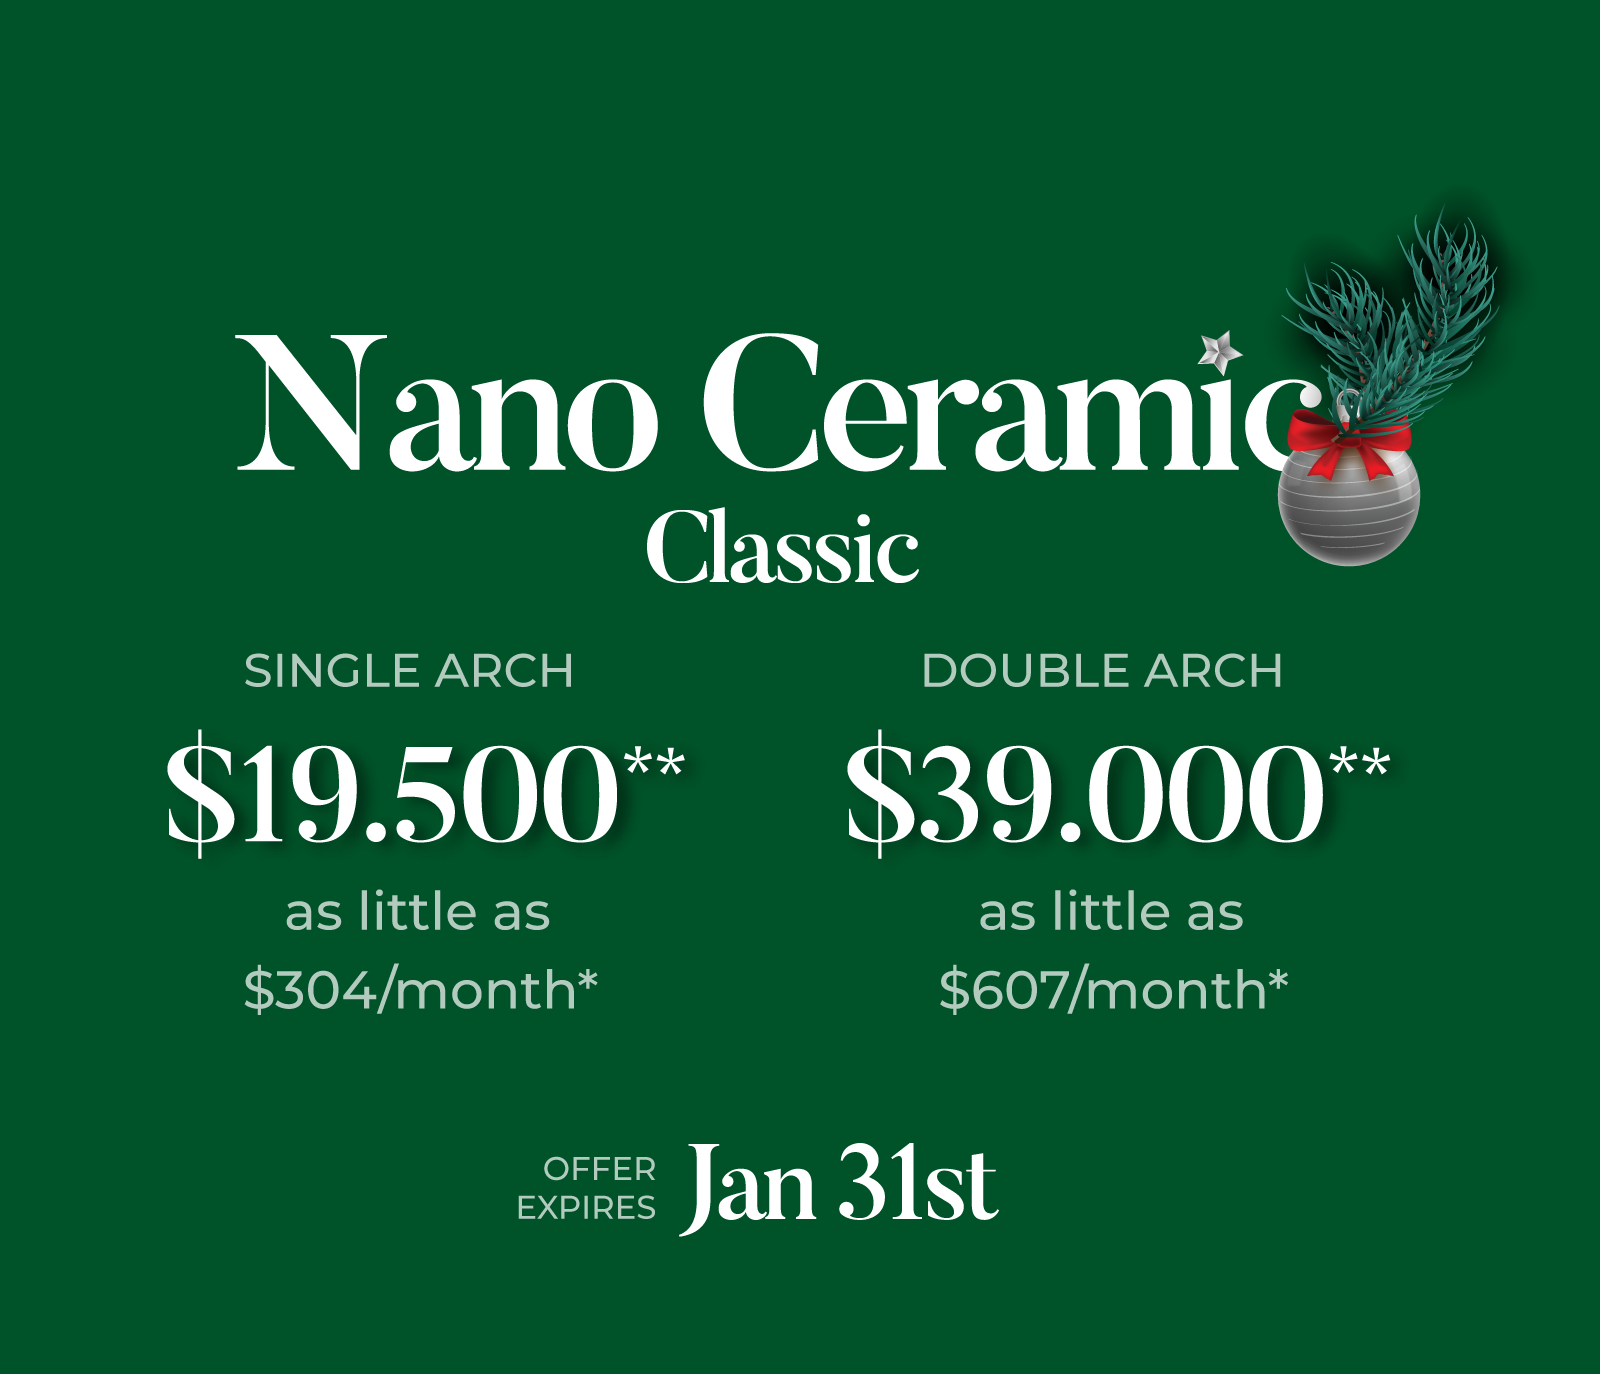 Nano Ceramic Classic Pricing